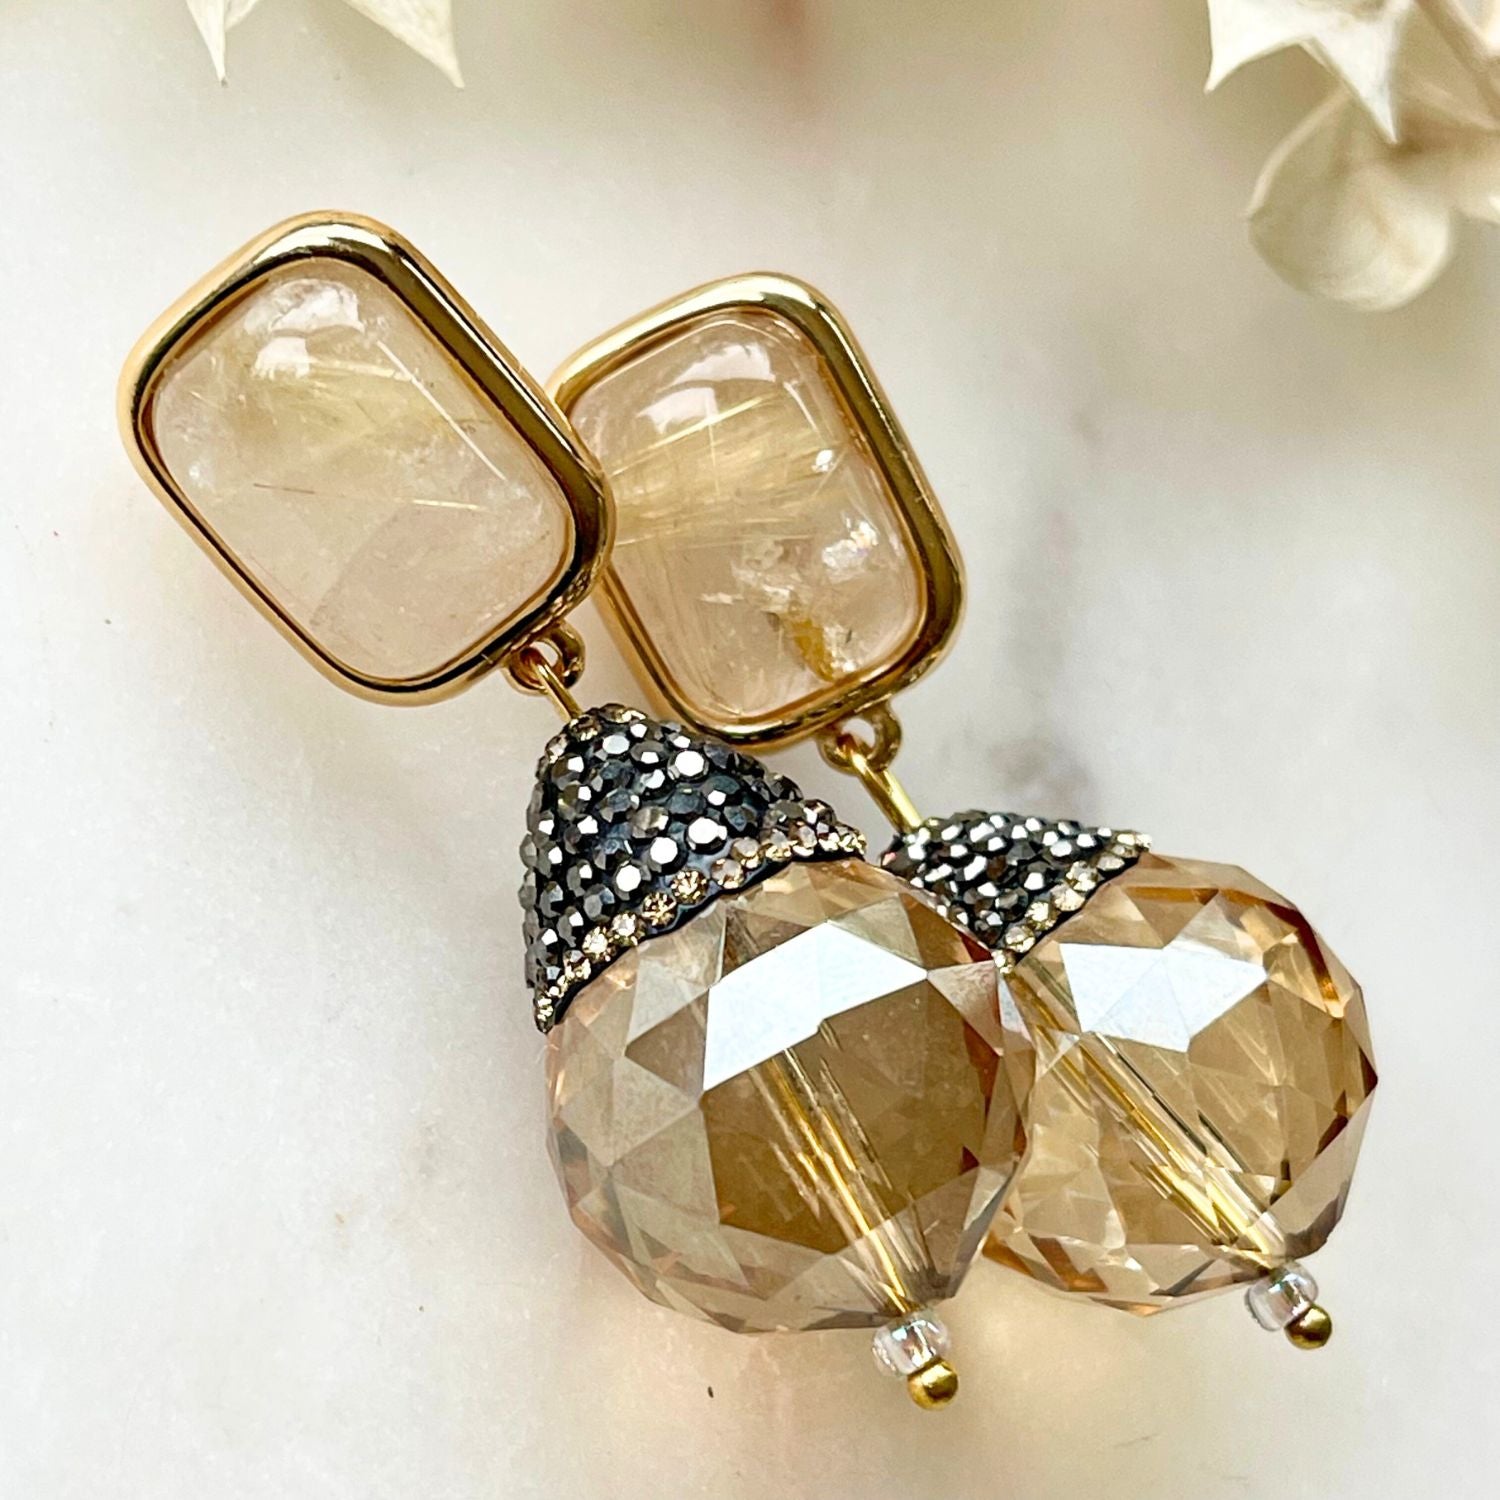 Ohrclips THERESA mit Rutil und Kristall - Alessandra Schmidt Jewelry